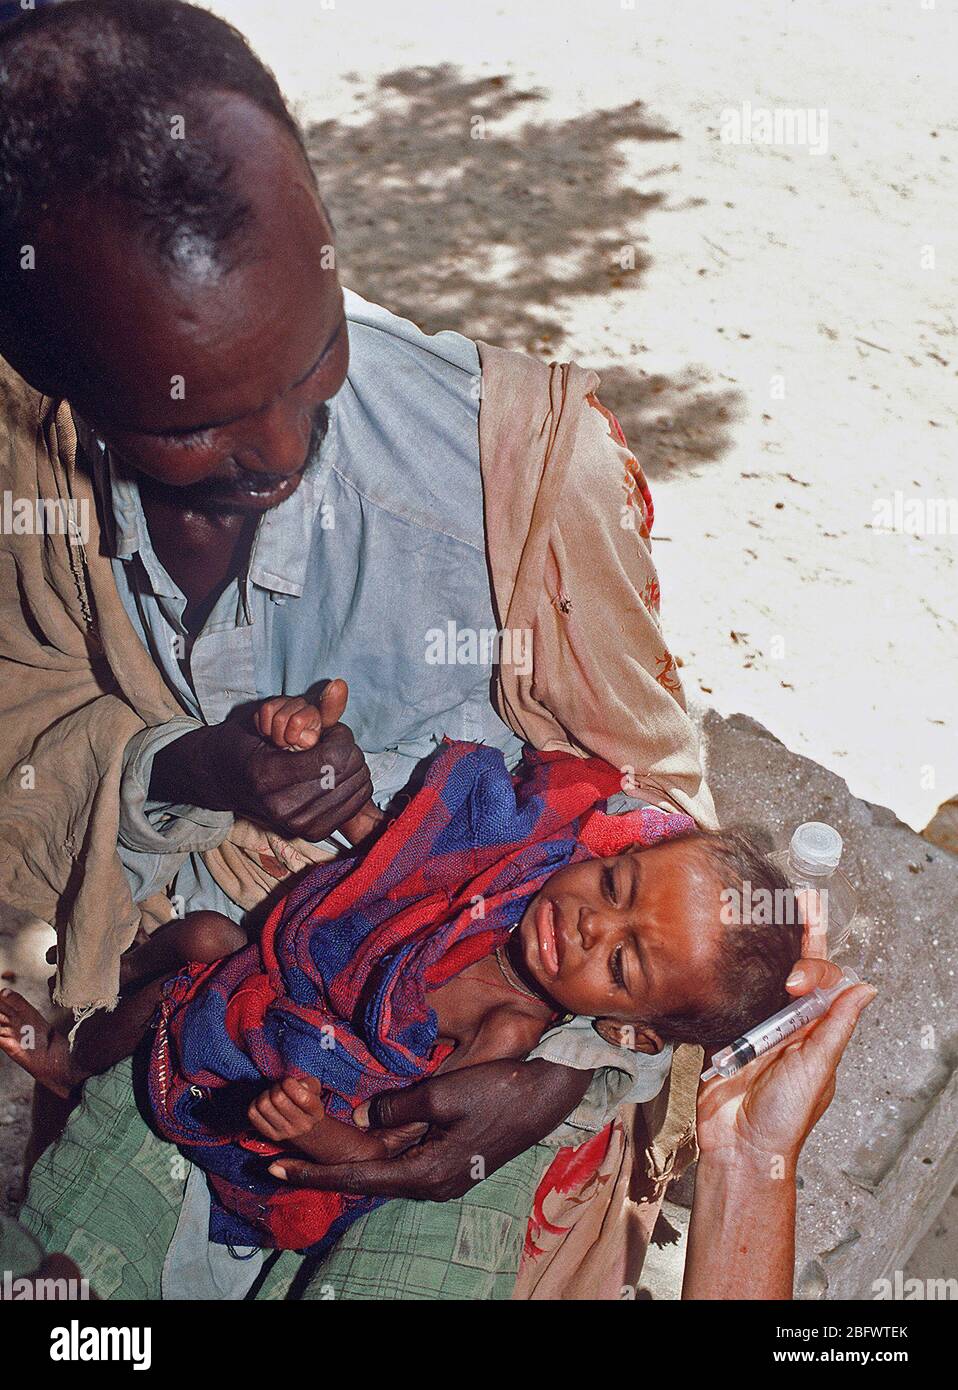 1993 - Un niño llora de refugiados somalíes, después de habérseles dado agua a través de una jeringa en una estación de ayuda establecido durante la operación Restaurar la esperanza los esfuerzos de socorro. Bardera (Somalia) Foto de stock